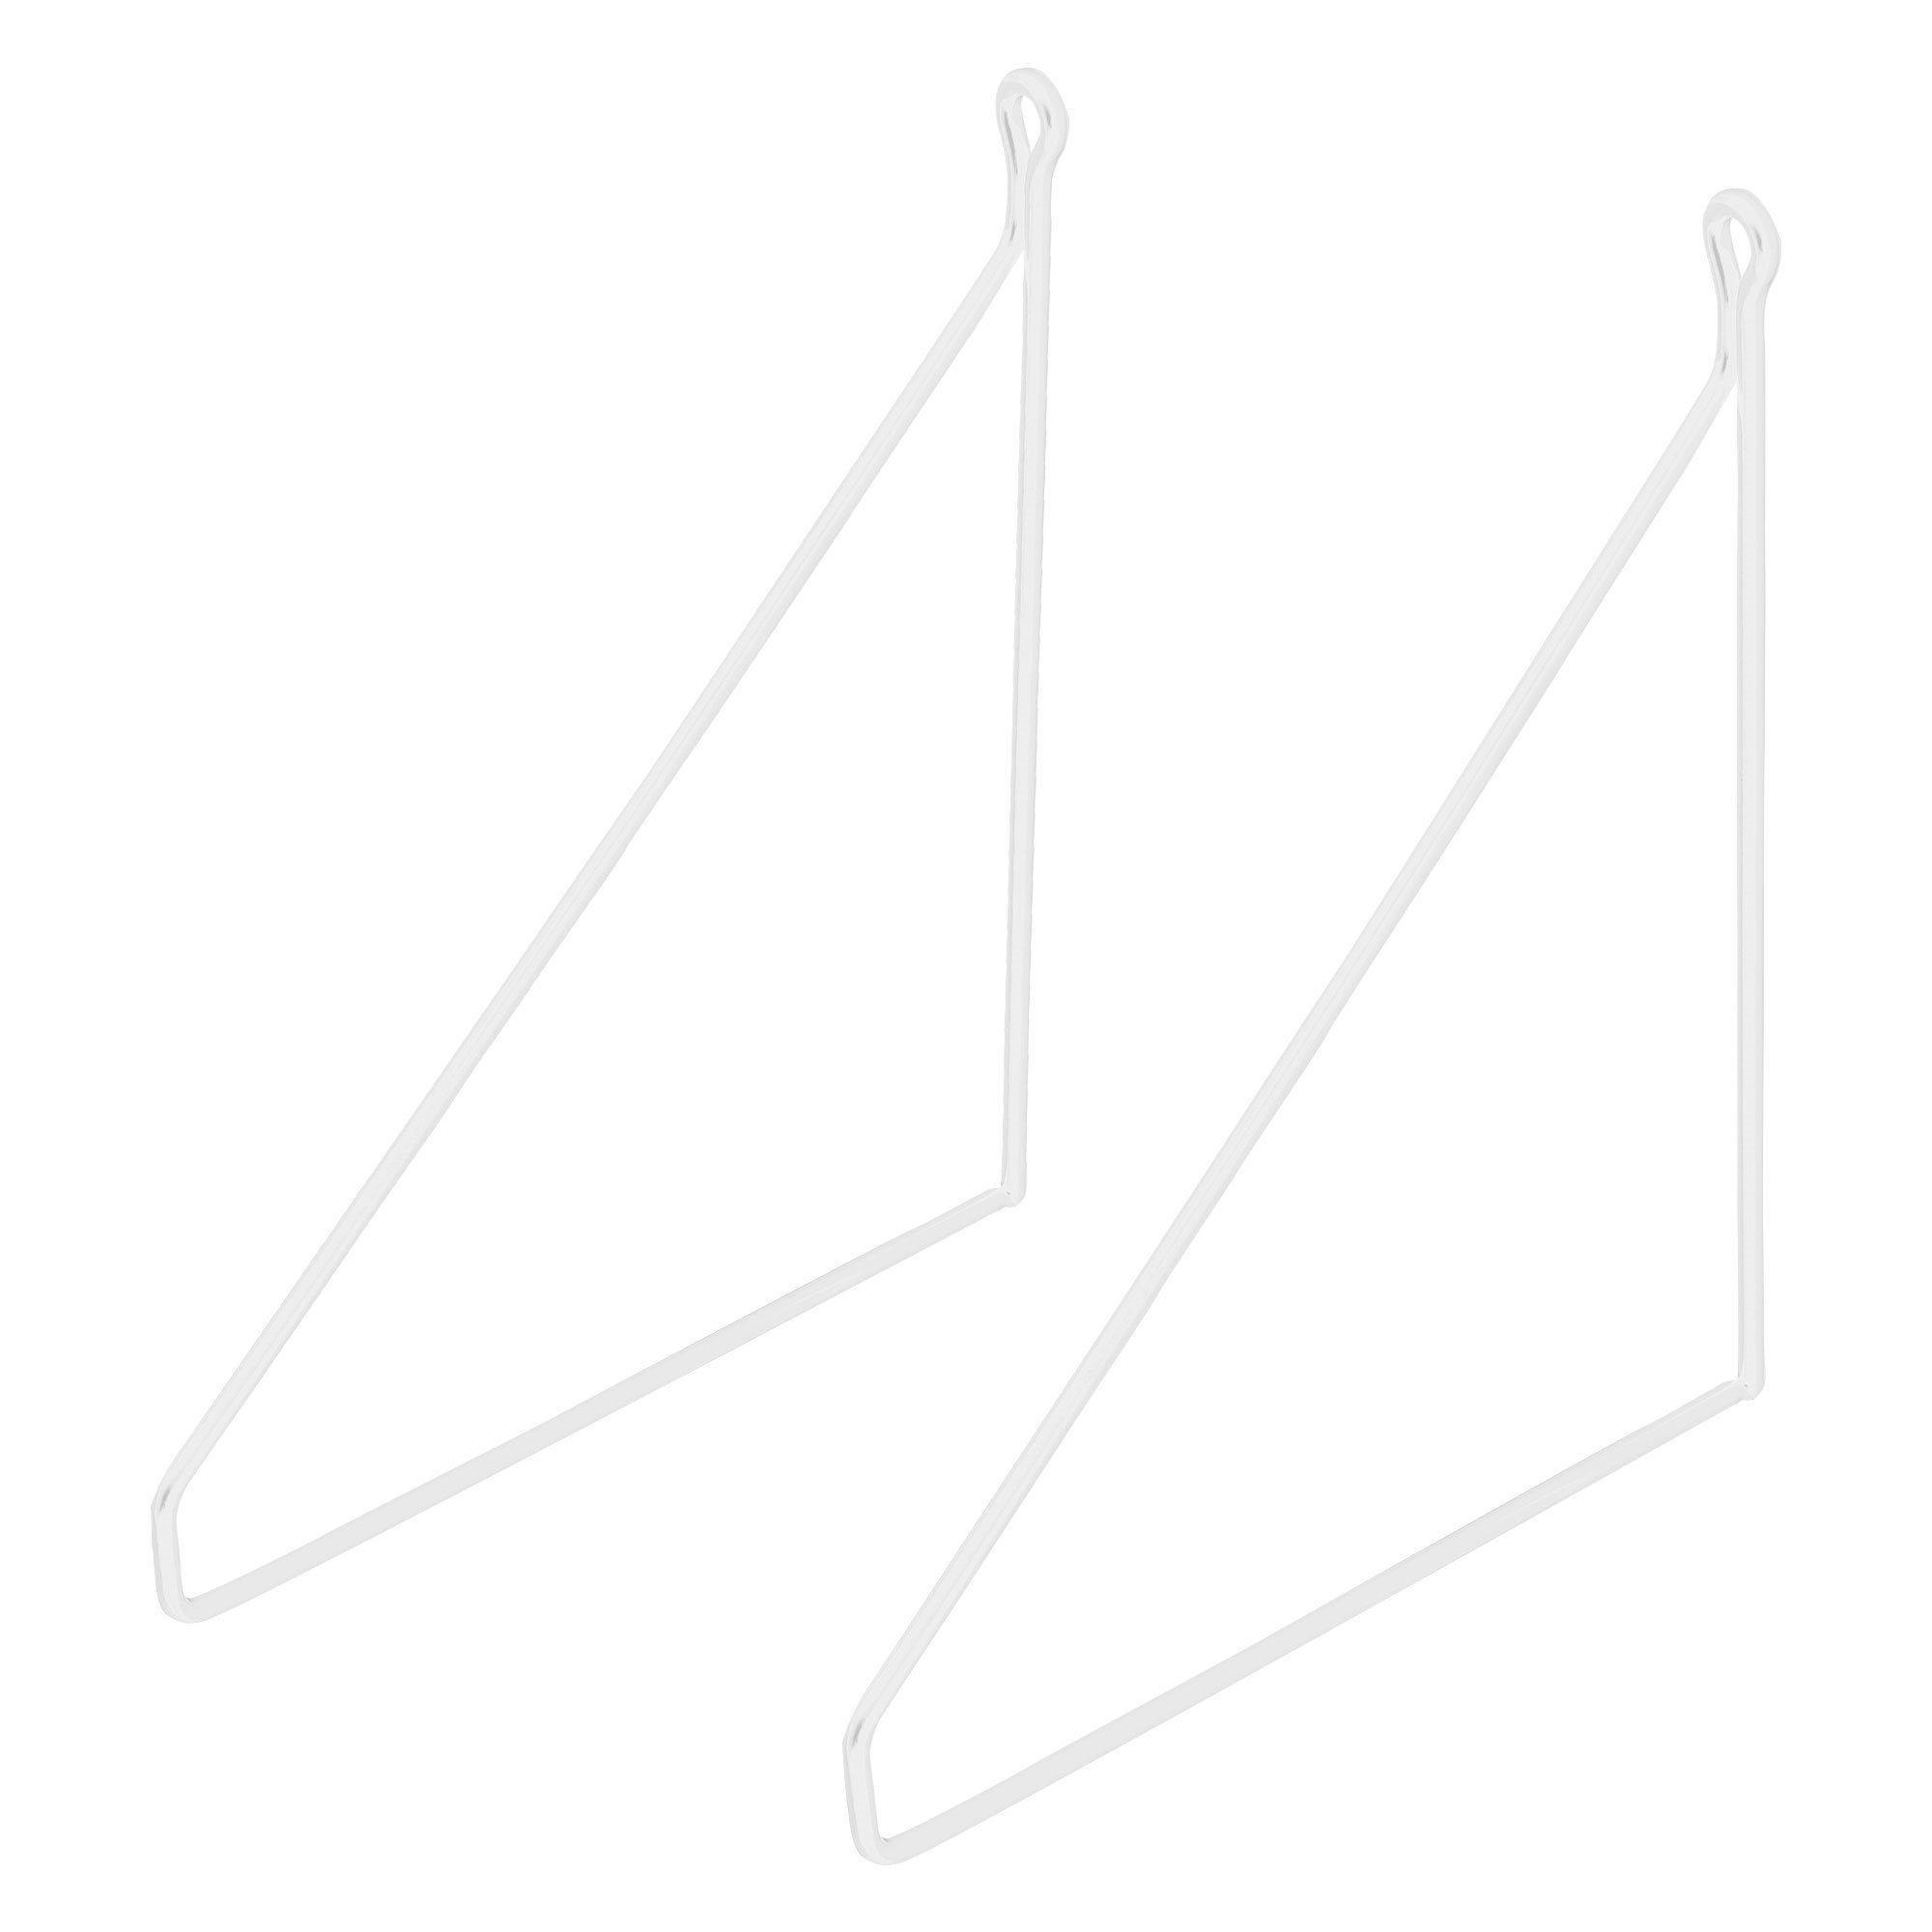 ML-DESIGN Regal Regalhalterung Schwebe Regalwinkel Draht Wandhalterung Regalträger, 2 Stück 250mm Weiß Metall Dreieckig Wandmontage